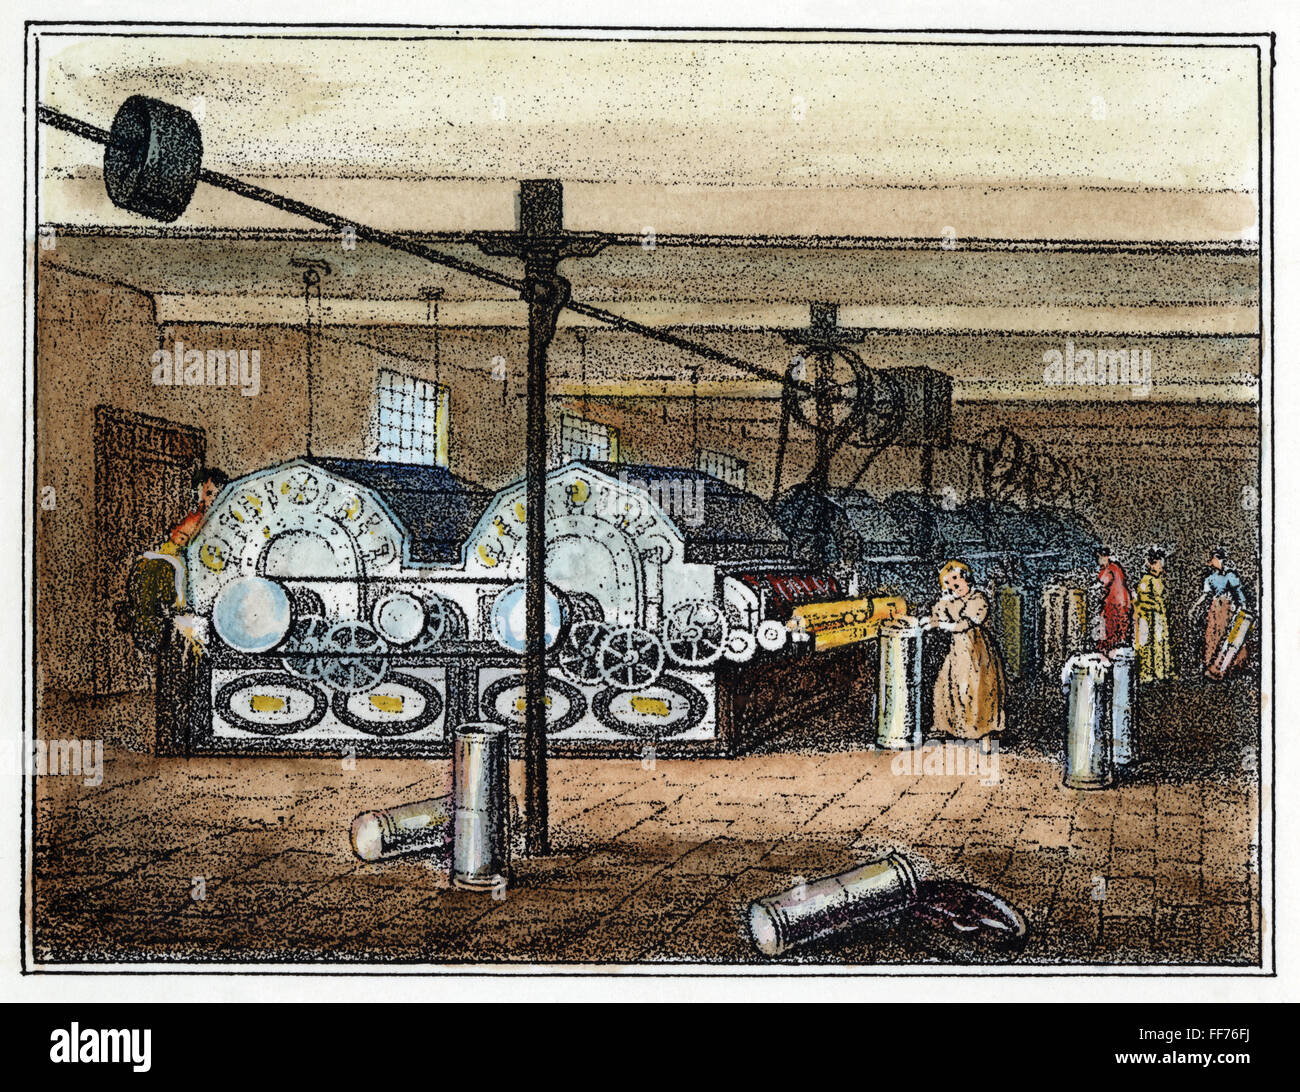 L'usine de textile, c1840. /Nle prix d'octroi de l'Angleterre dans une nouvelle usine de textile du coton lithographie, c1840. Banque D'Images